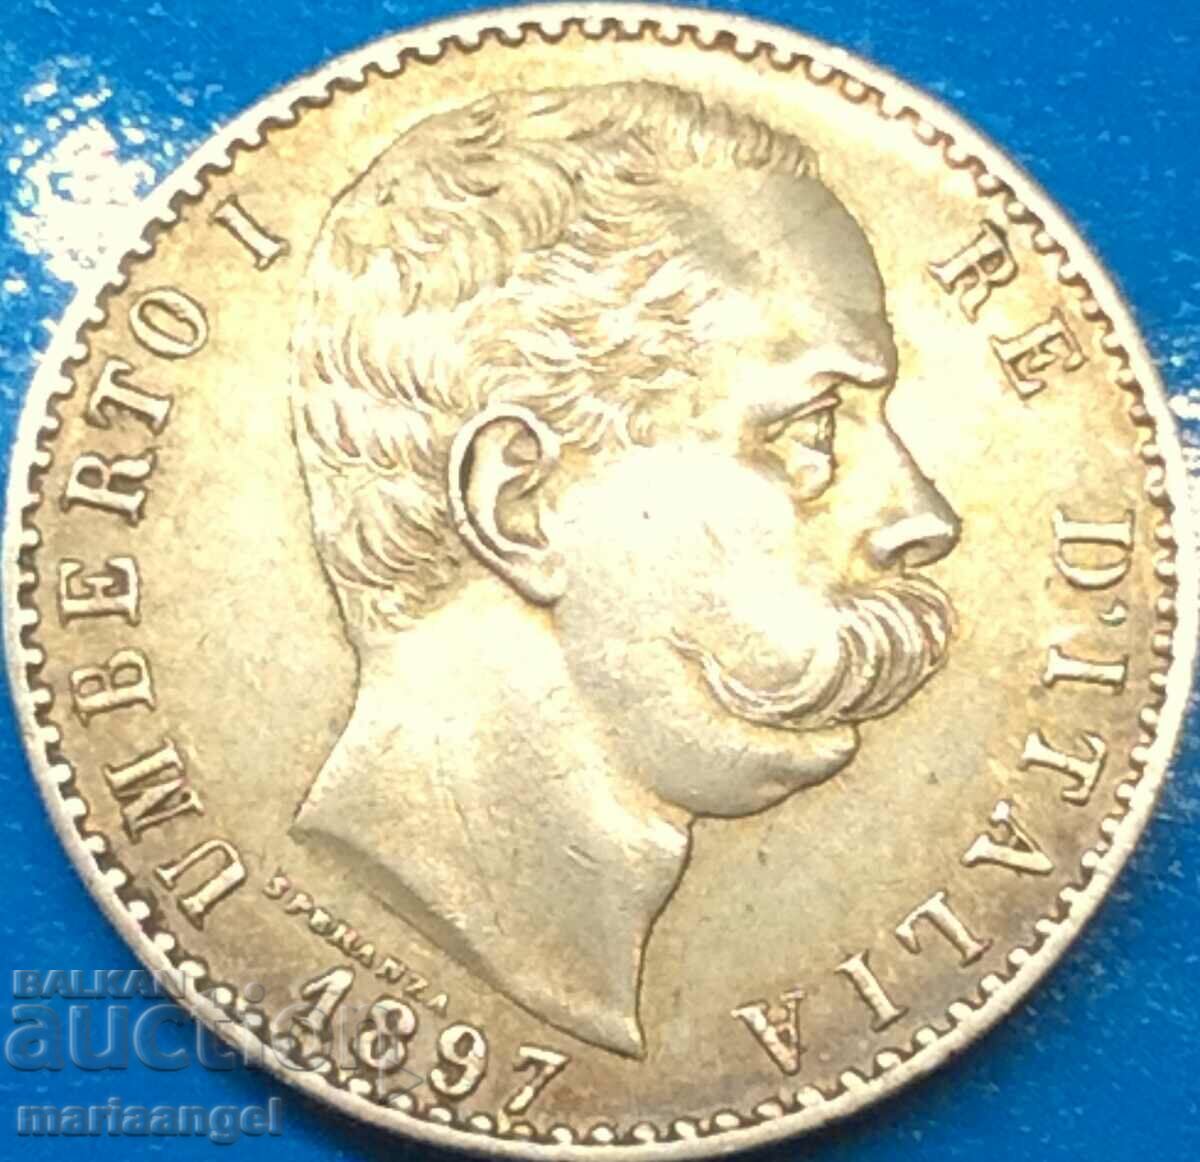 2 лири 1897 Италия Умберто I лека златна патина